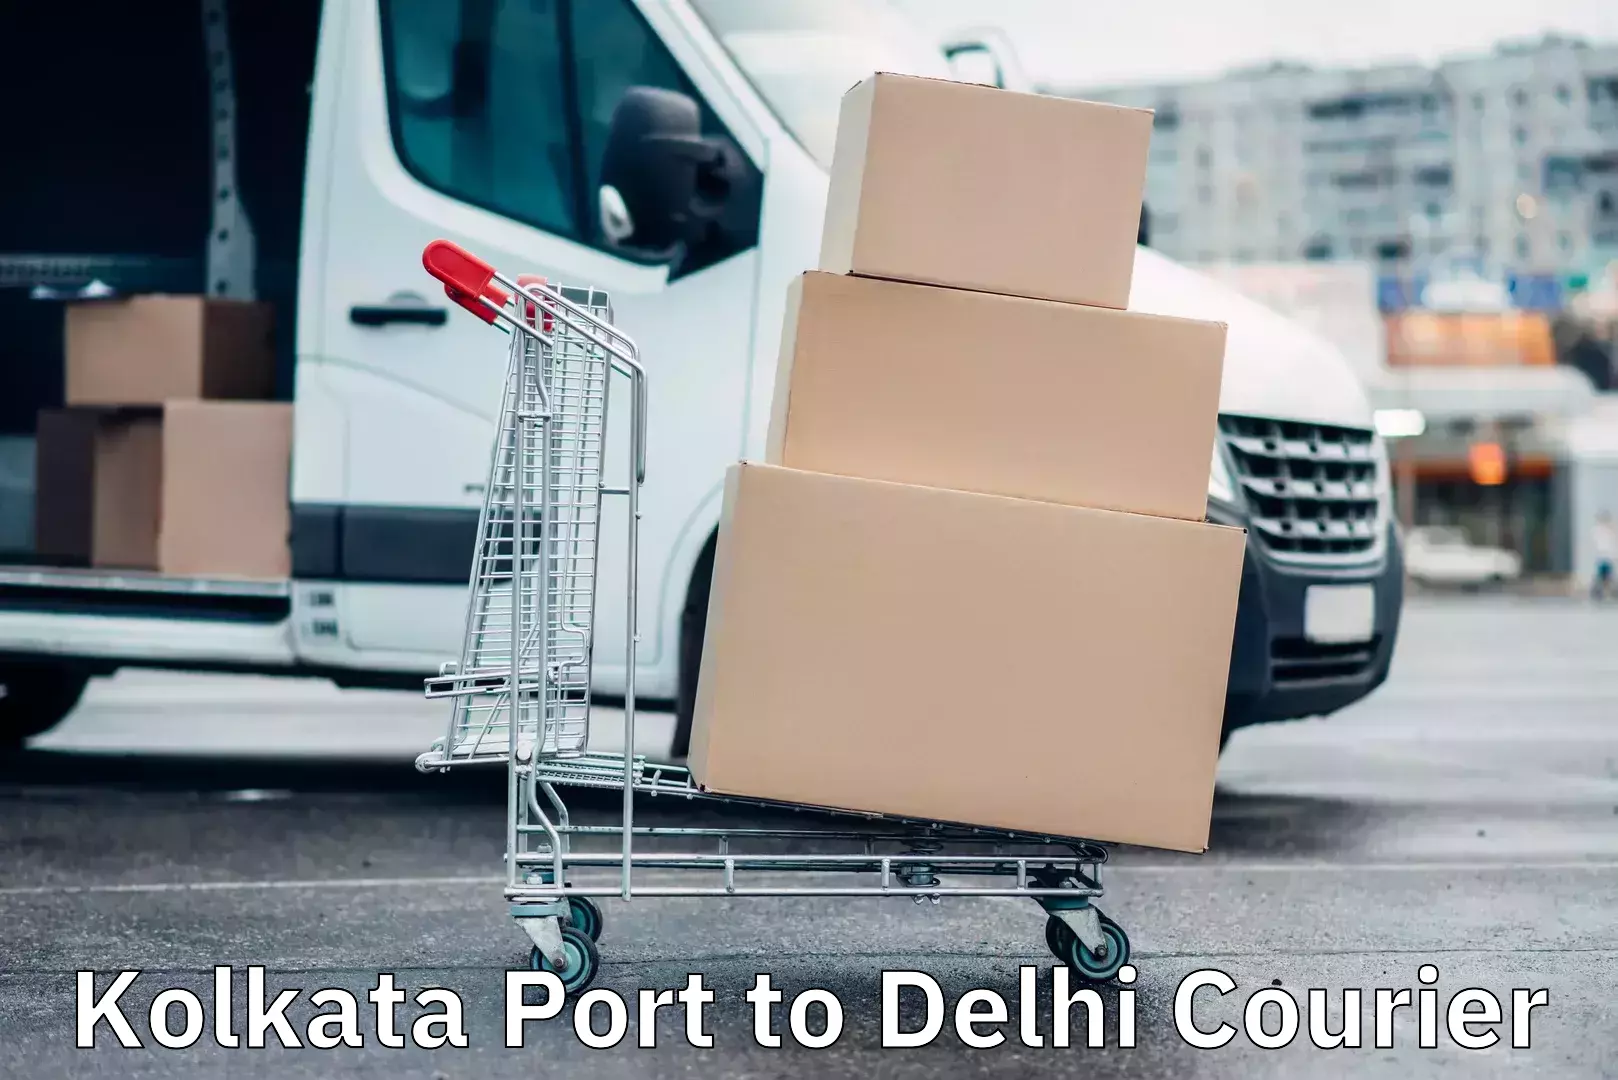 Urgent courier needs Kolkata Port to Delhi